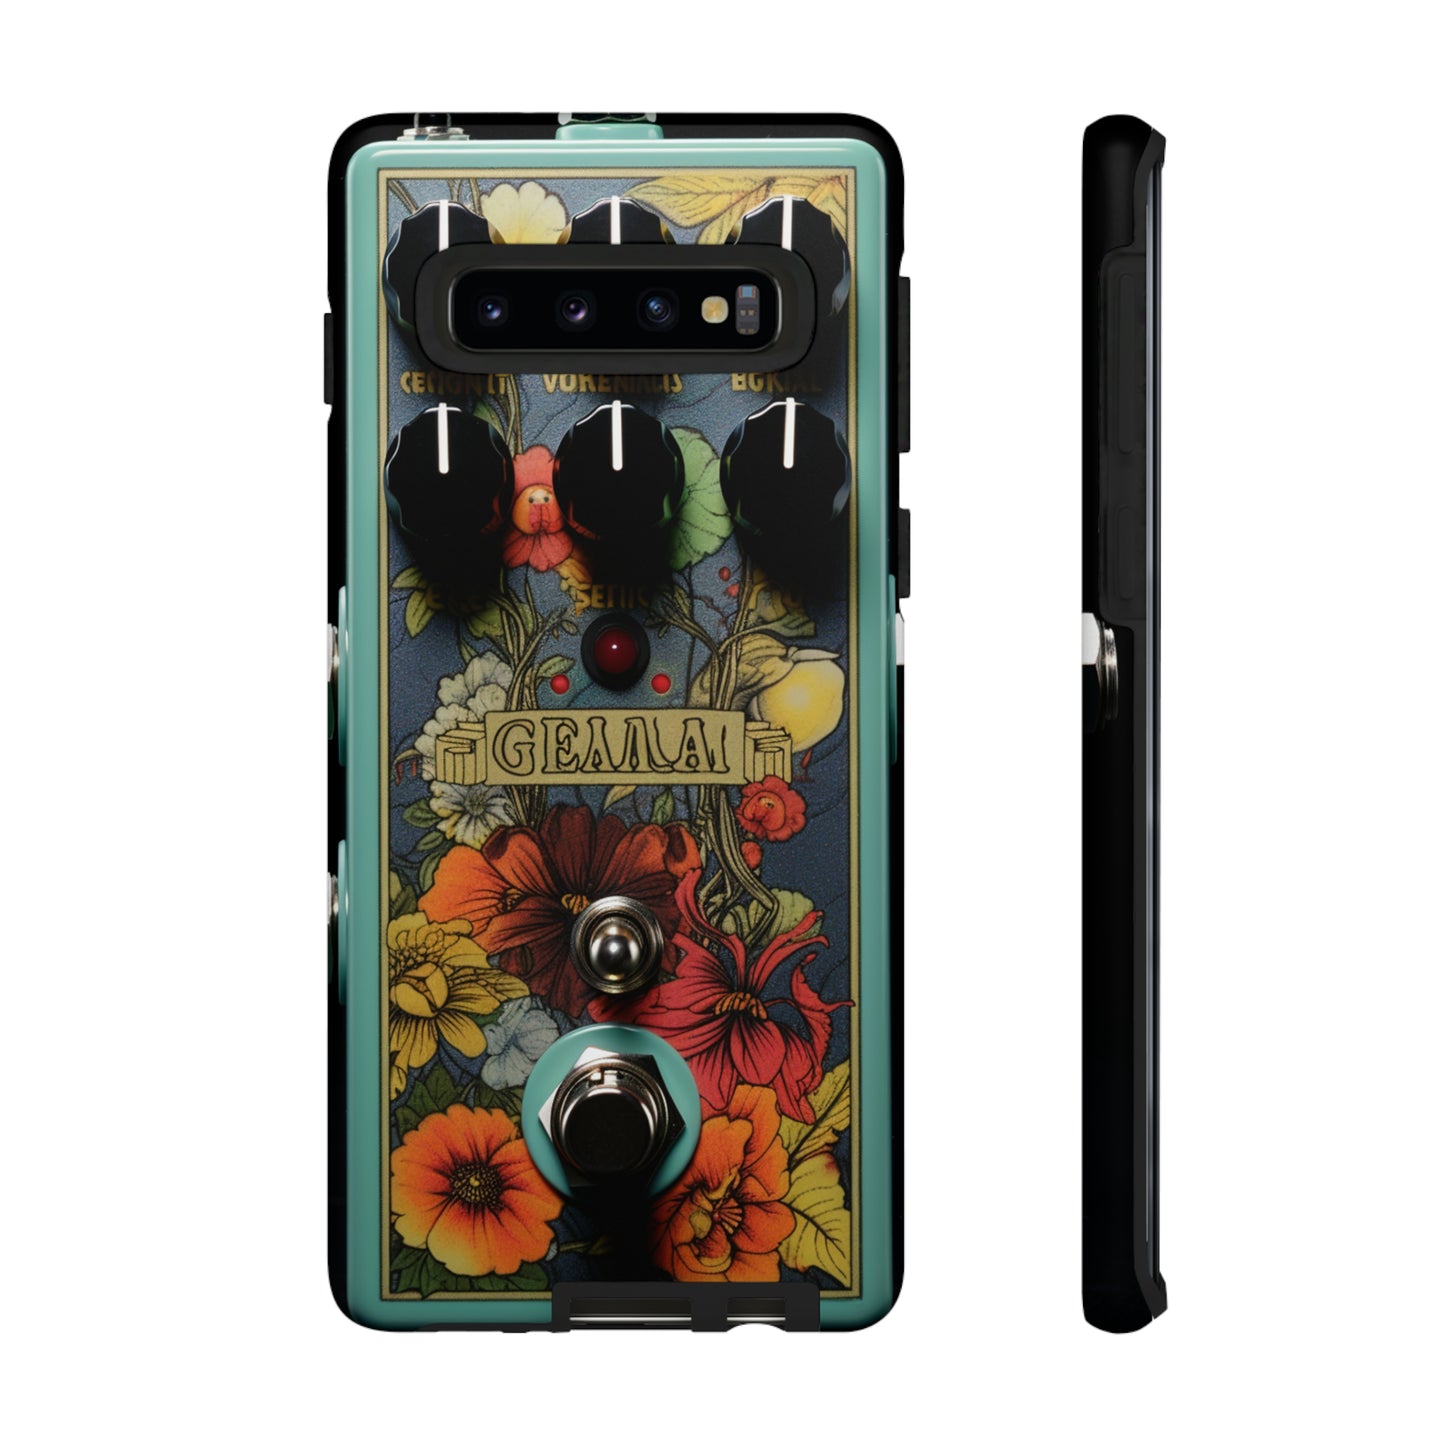 Retro guitar pedal artwork on premium phone case